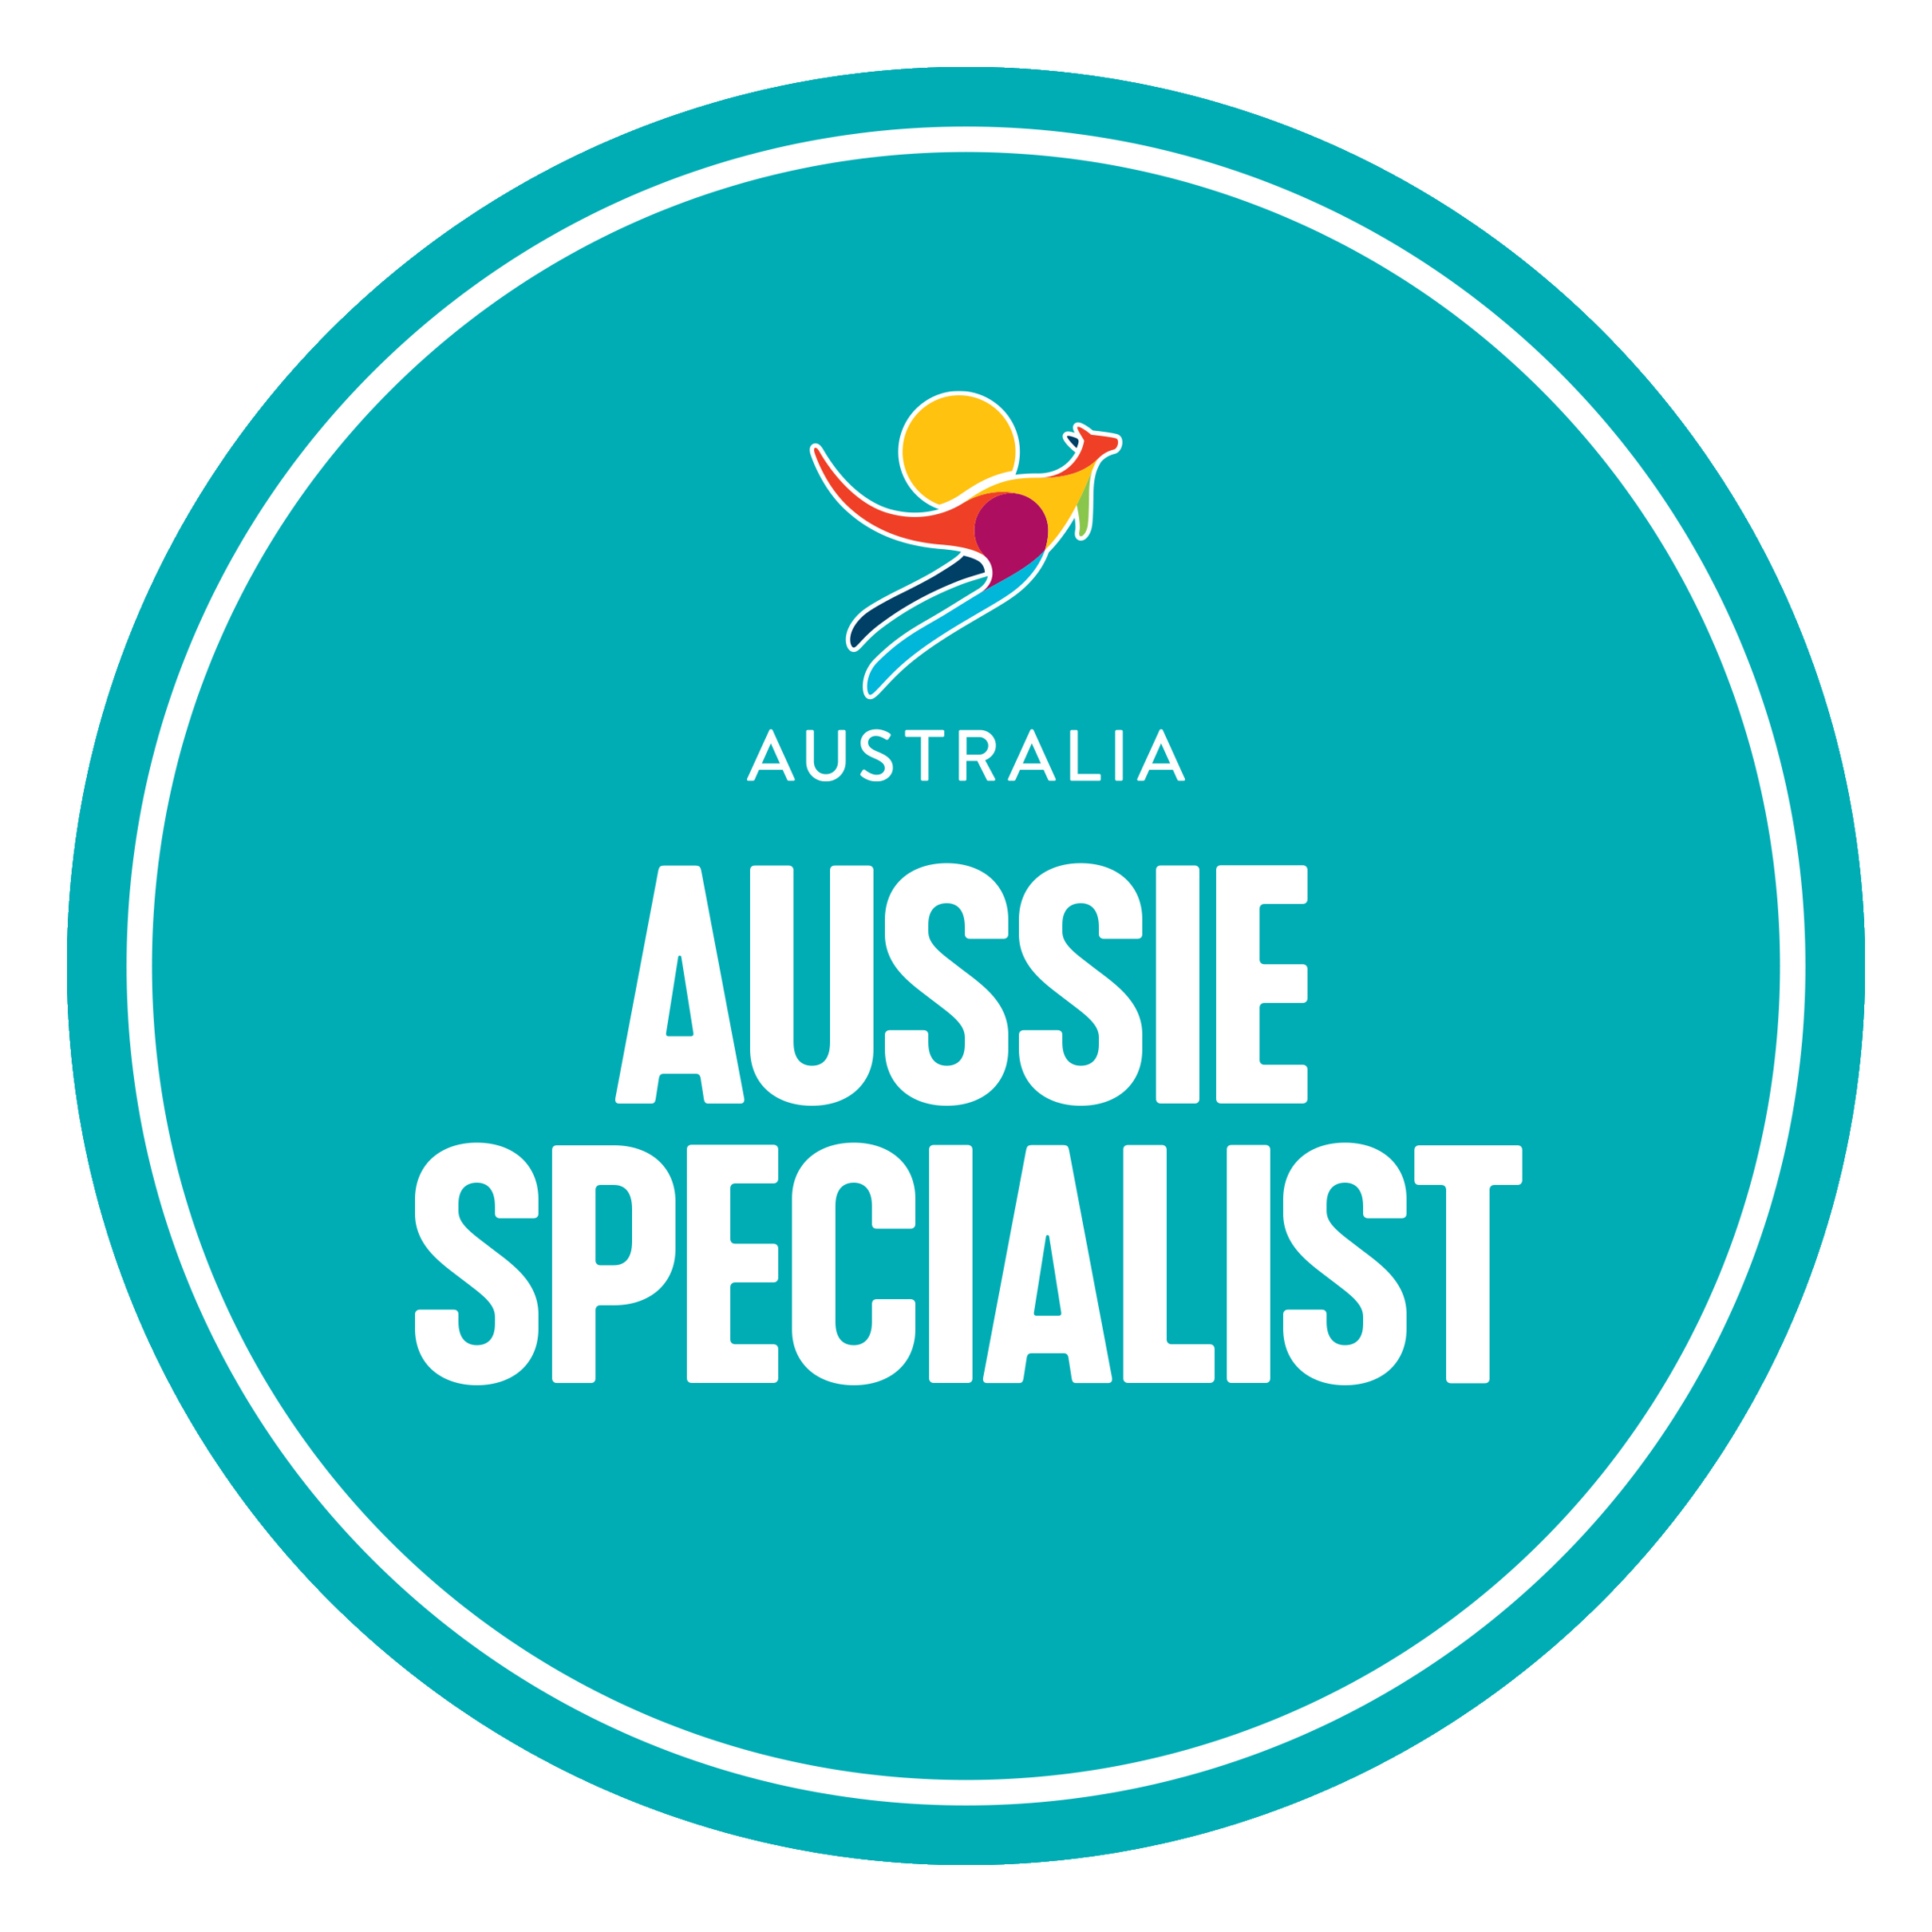 Aussie Specialist Certification Badge